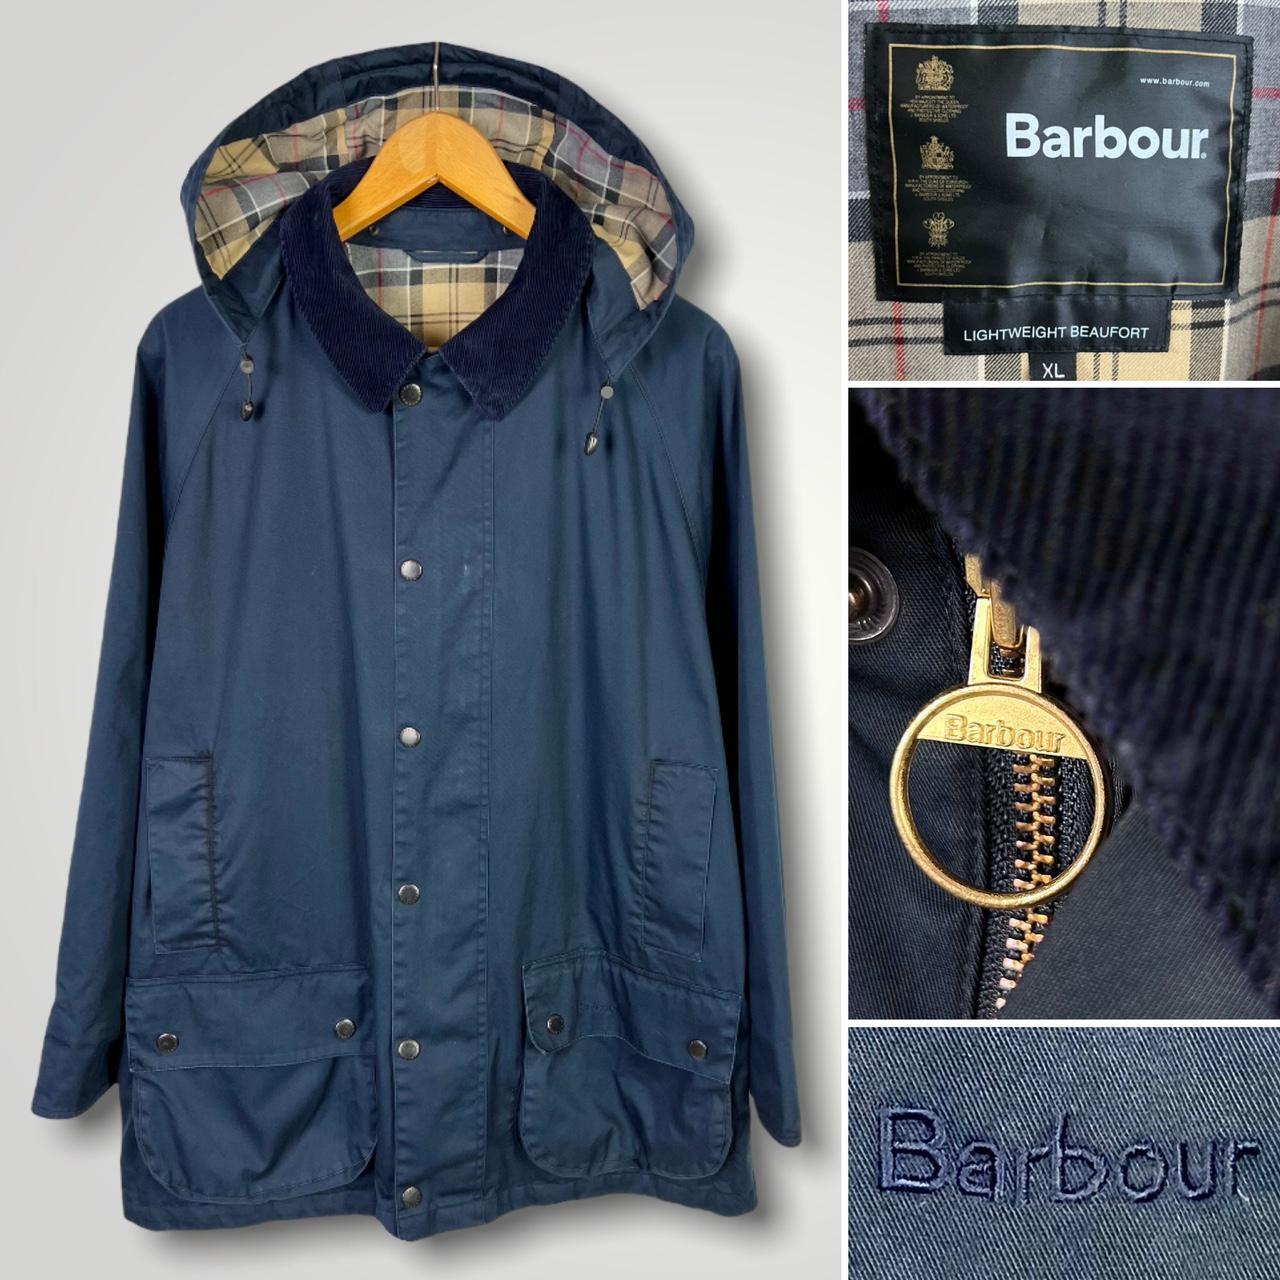 Barbour Lightweight Beaufort Navy Full-Zip Jacket... - Depop